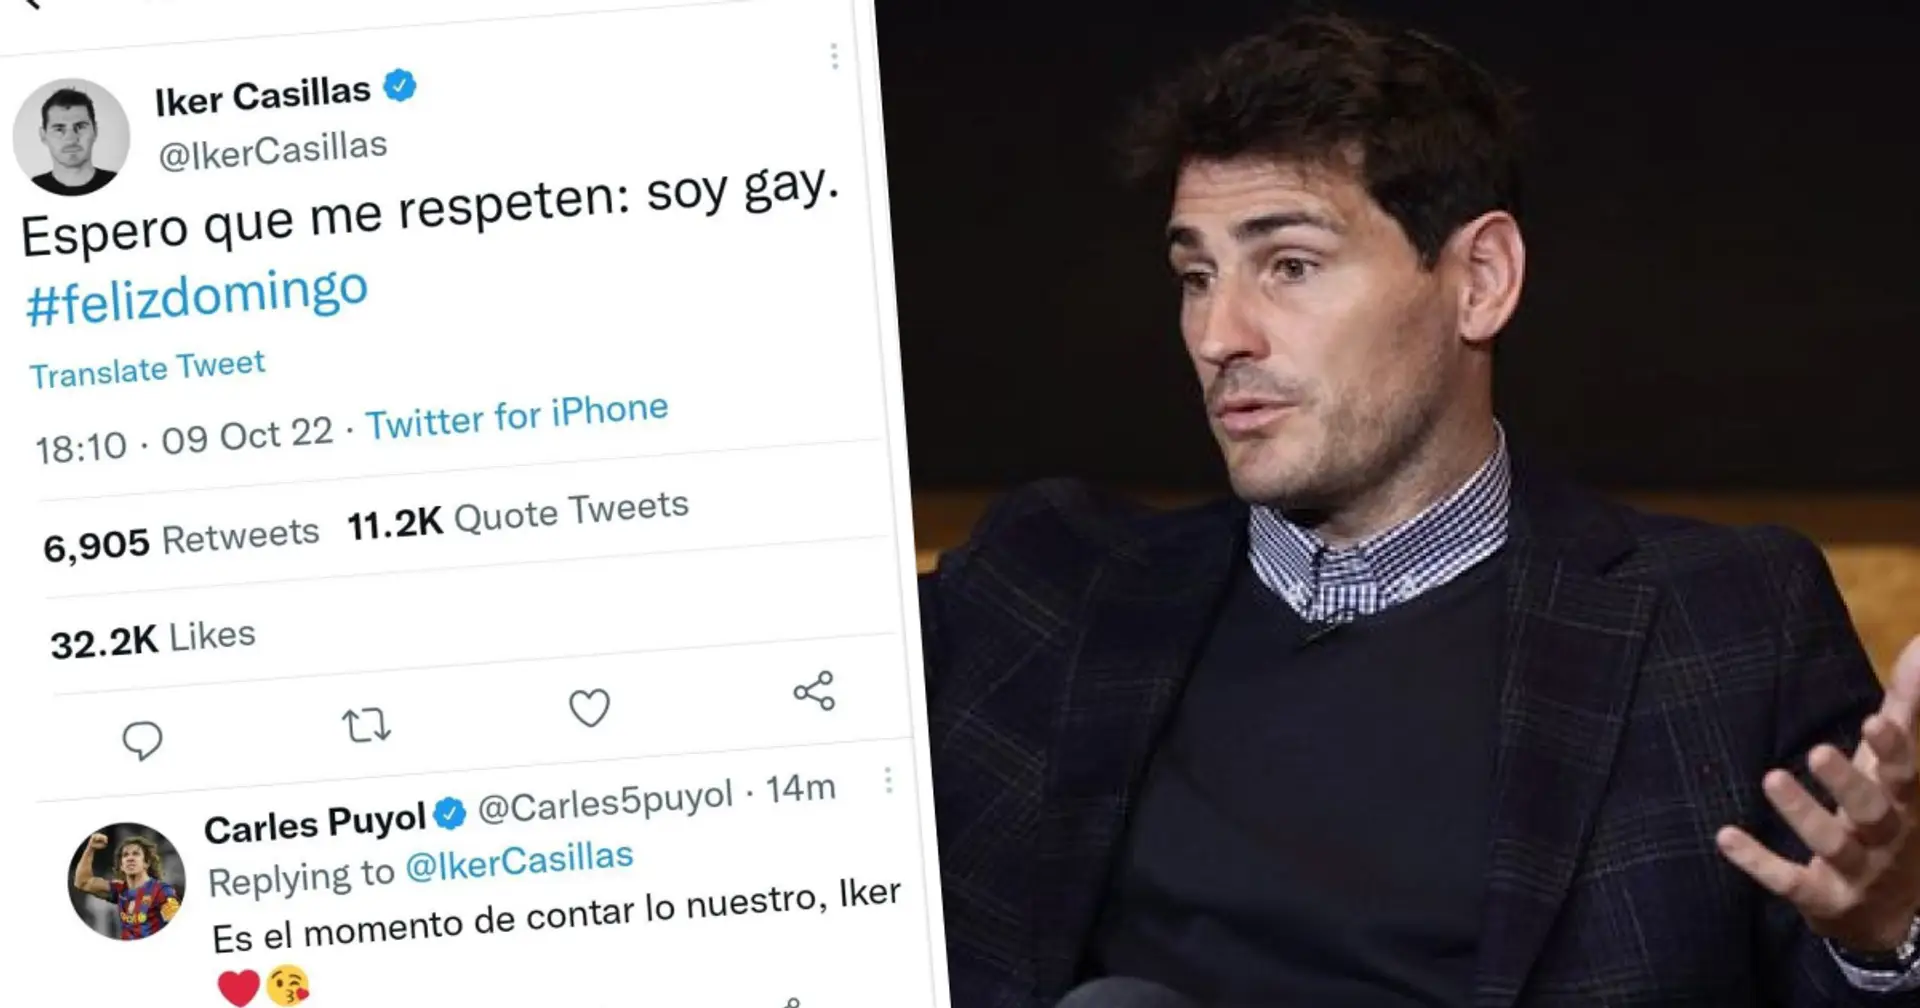 Casillas supprime un tweet provocateur après avoir été critiqué par les fans. Qu'est-il arrivé? Explication